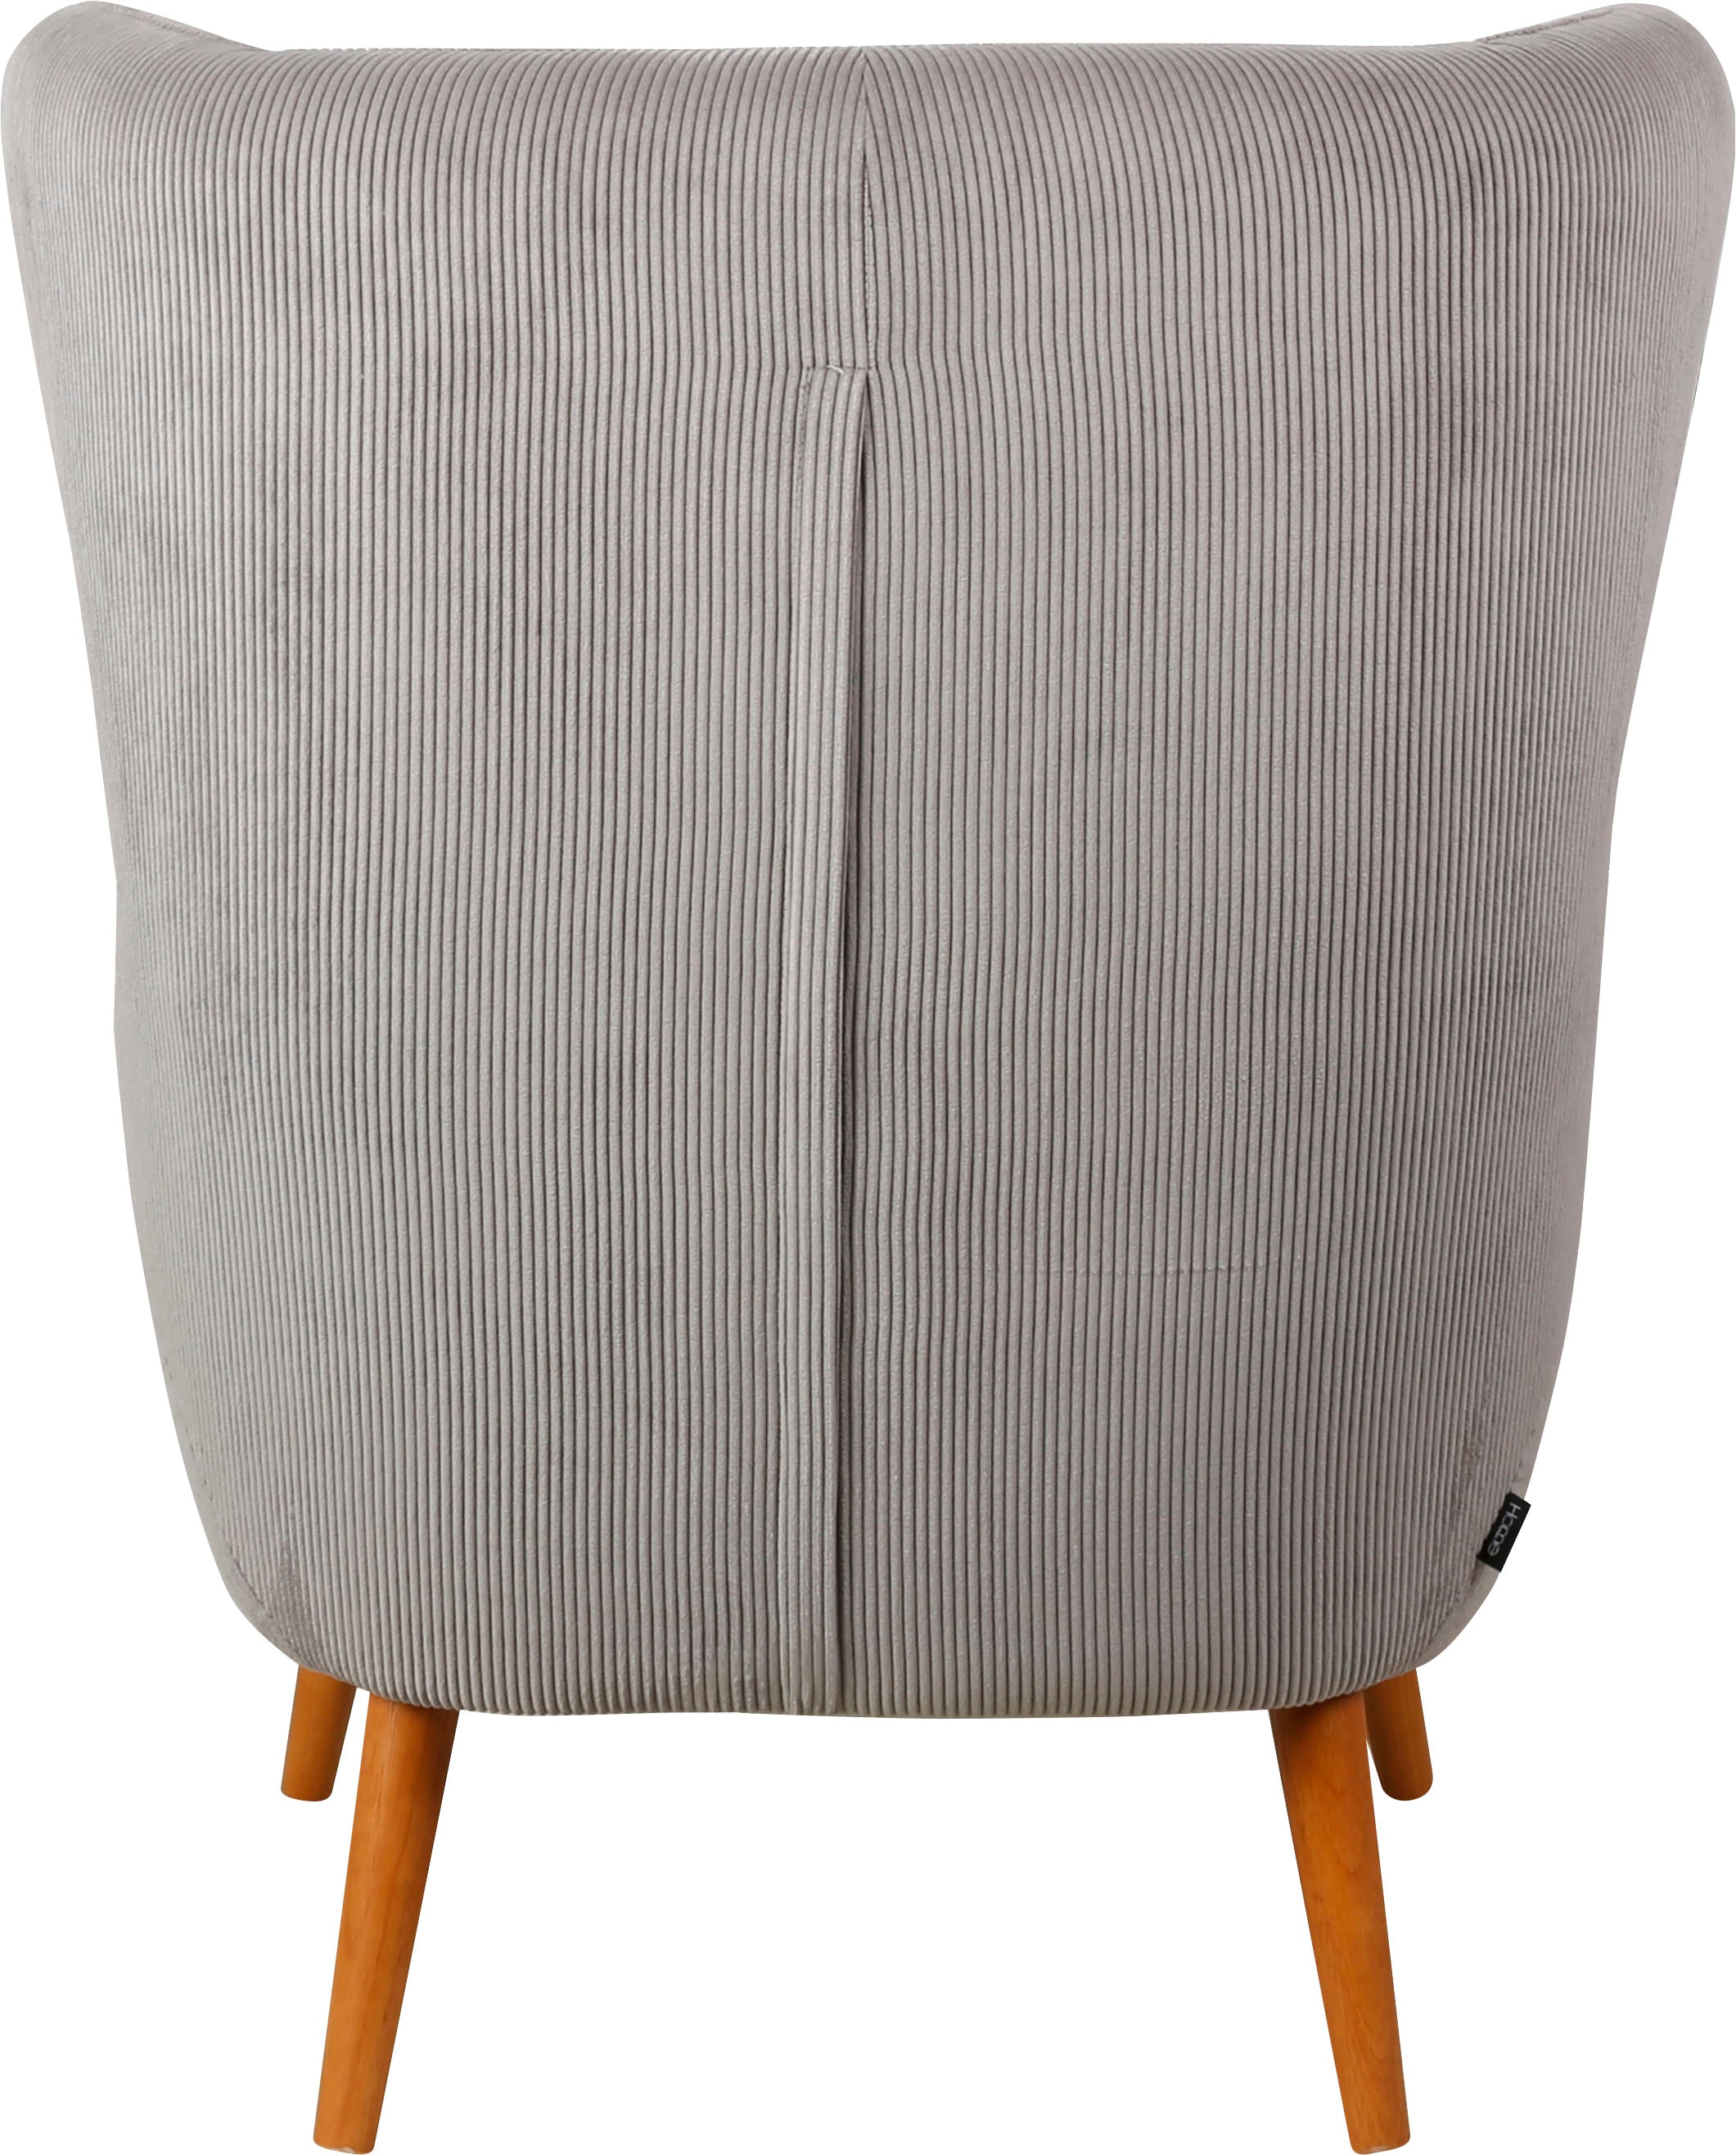 Home affaire Ohrensessel »Yamuna, in Cord,«, mit Sitzpolsterung, Gestell und Füsse aus Massivholz, Sitzhöhe 47 cm